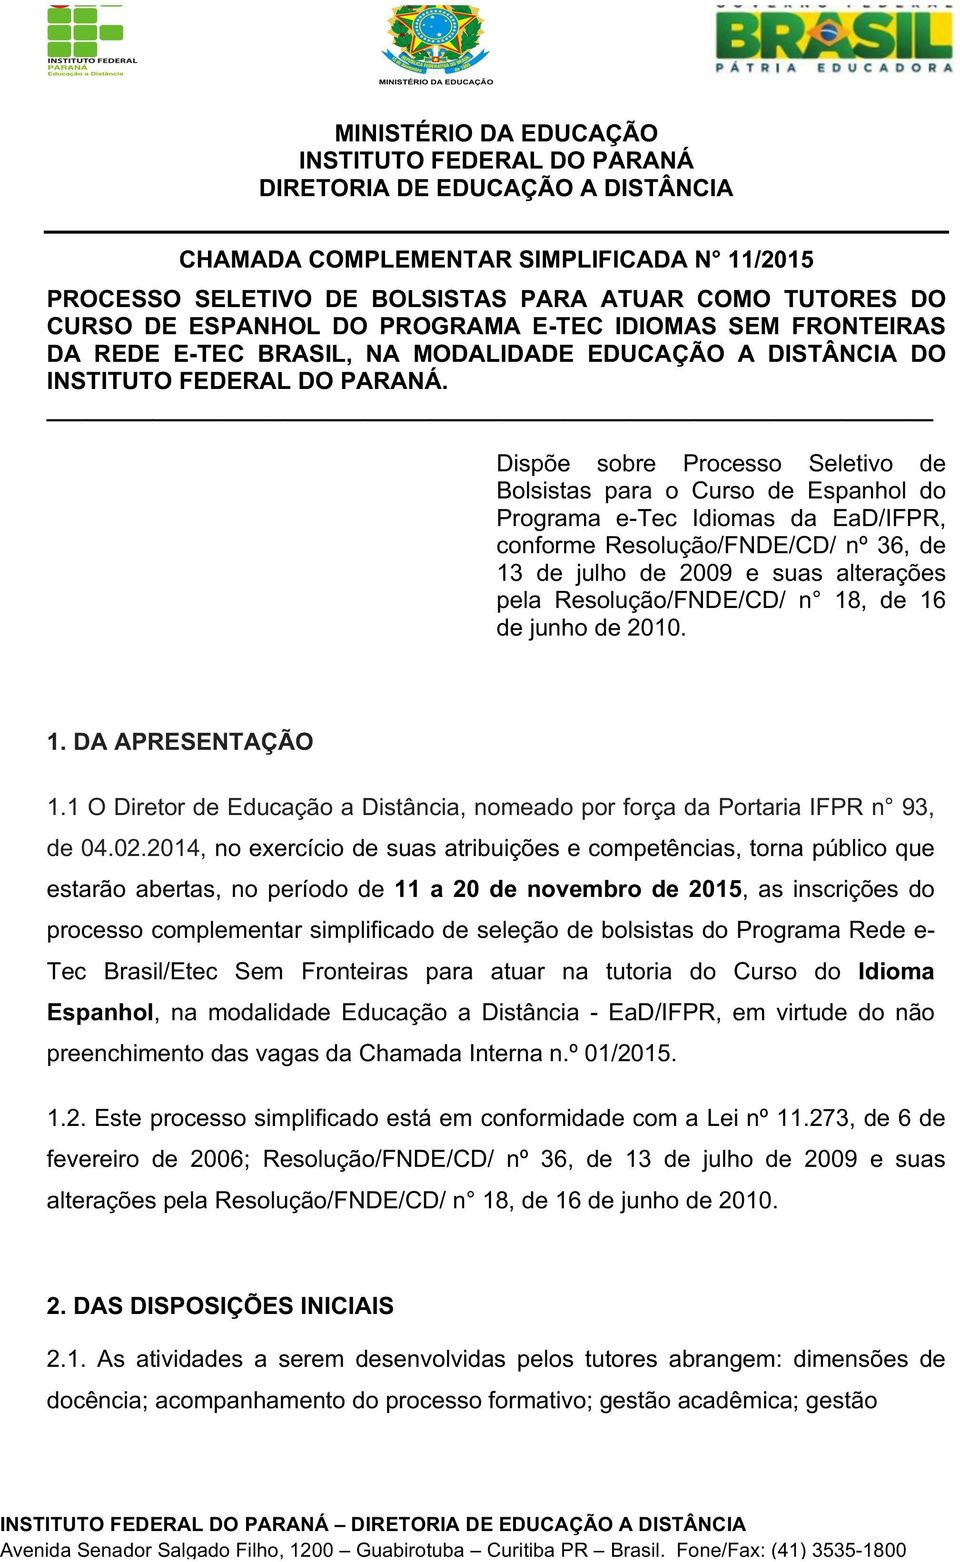 Dispõe sobre Processo Seletivo de Bolsistas para o Curso de Espanhol do Programa e-tec Idiomas da EaD/IFPR, conforme Resolução/FNDE/CD/ nº 36, de 13 de julho de 2009 e suas alterações pela